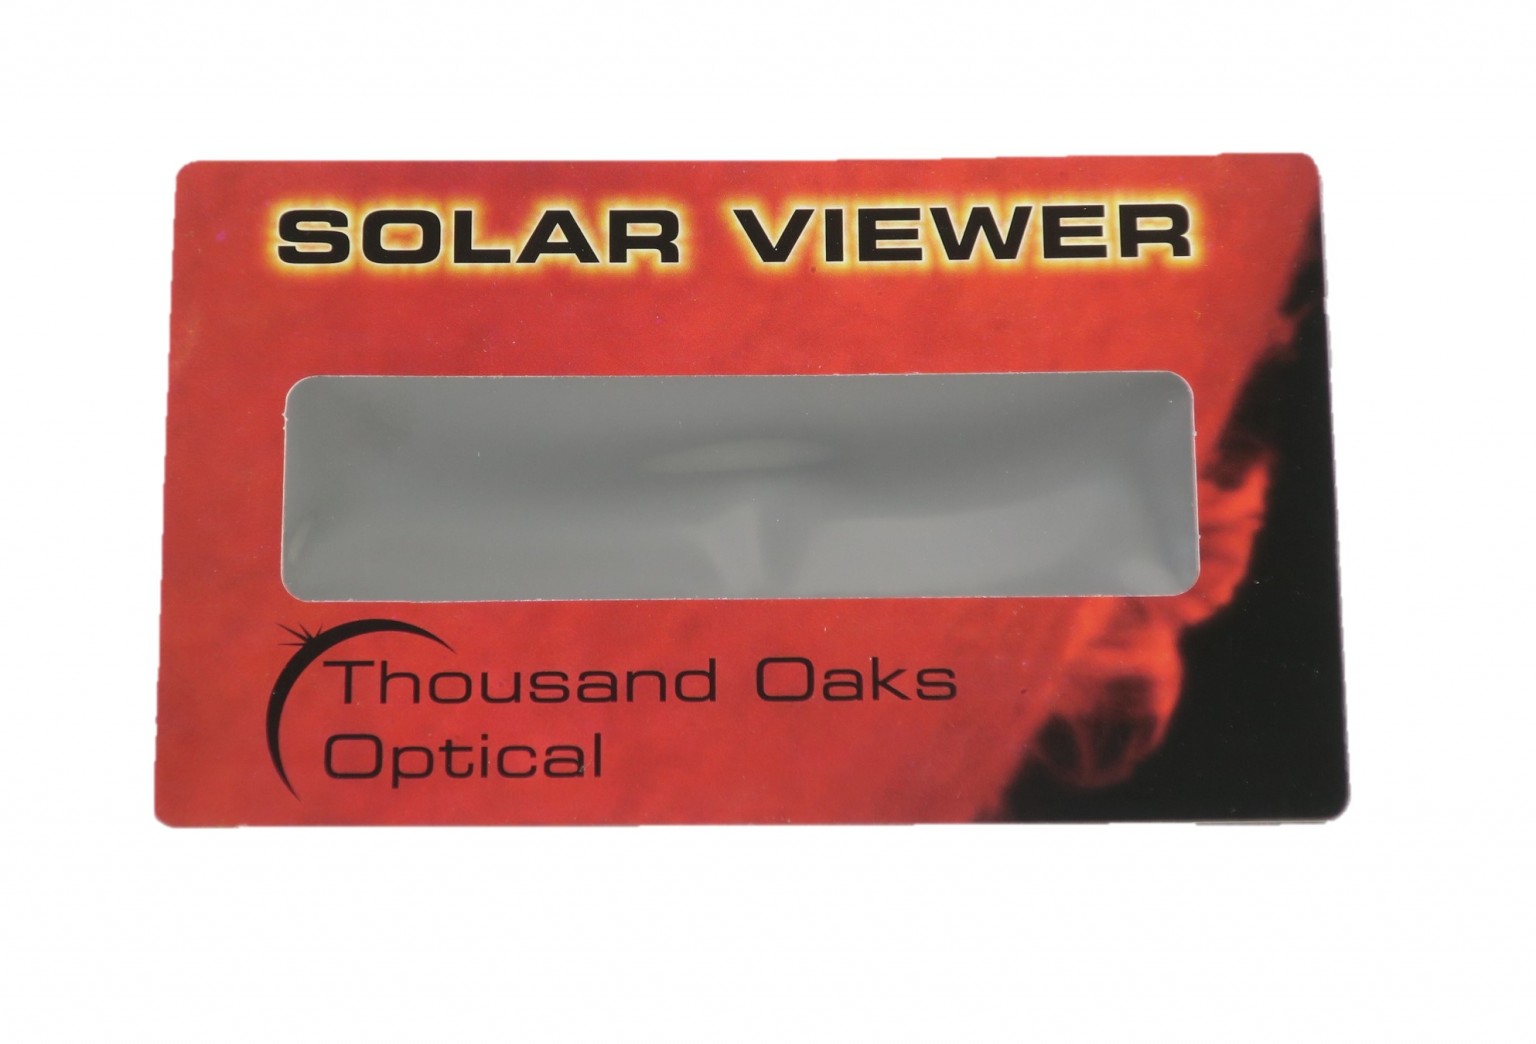 Thousand Oaks Optical Solar Viewer x 10